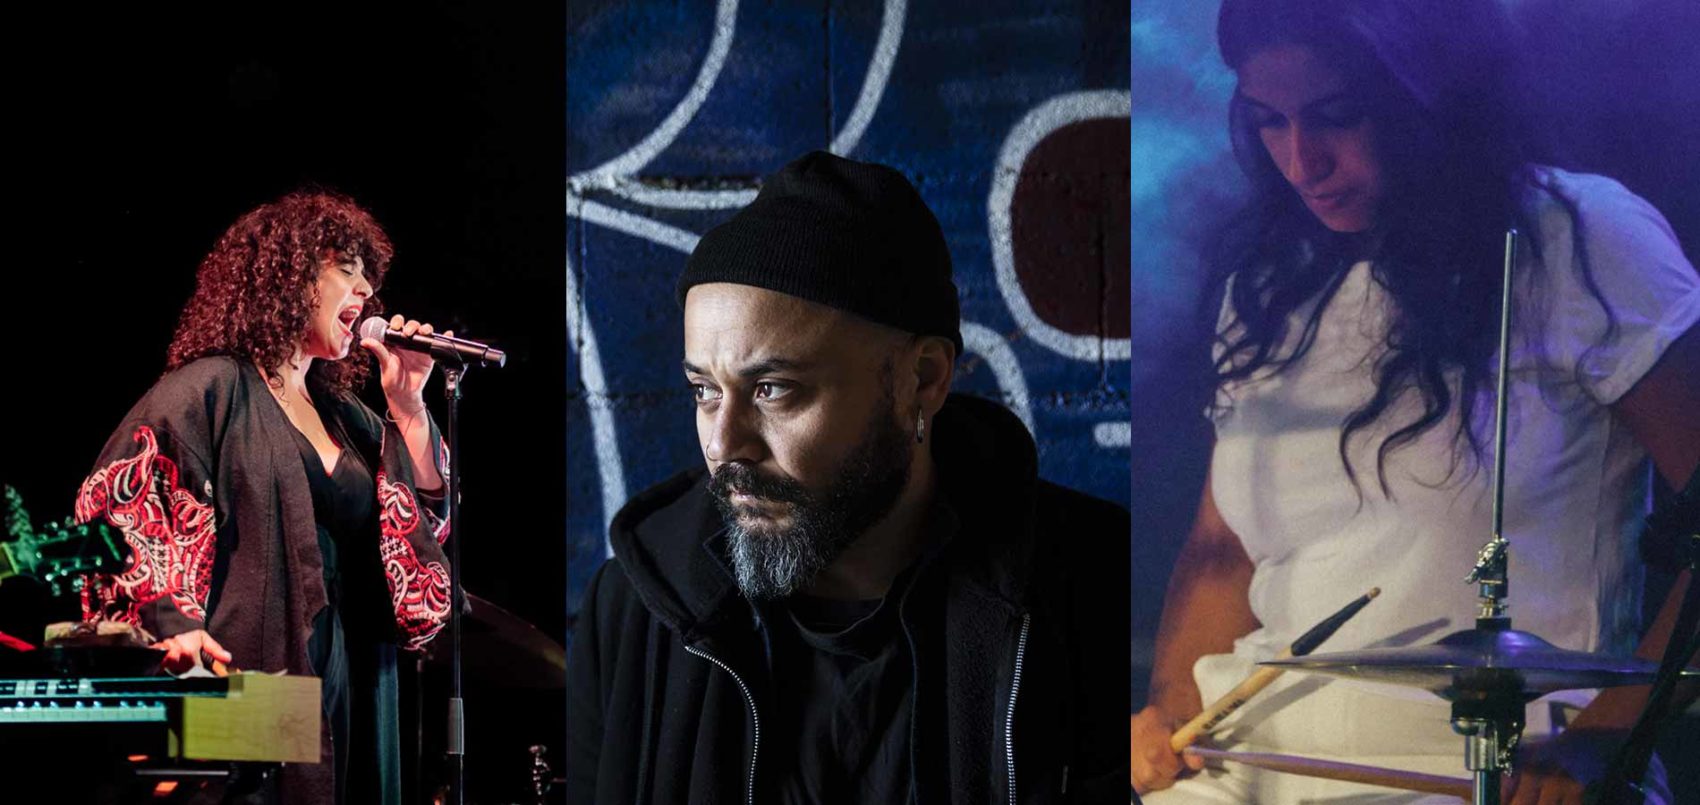 A gauche, la chanteuse de Meral Polat. Au milieu, un portrait de Scura fitchadu avec un bonnet noir. A droite, une femme qui fait de la batterie avec un t-shirt blanc